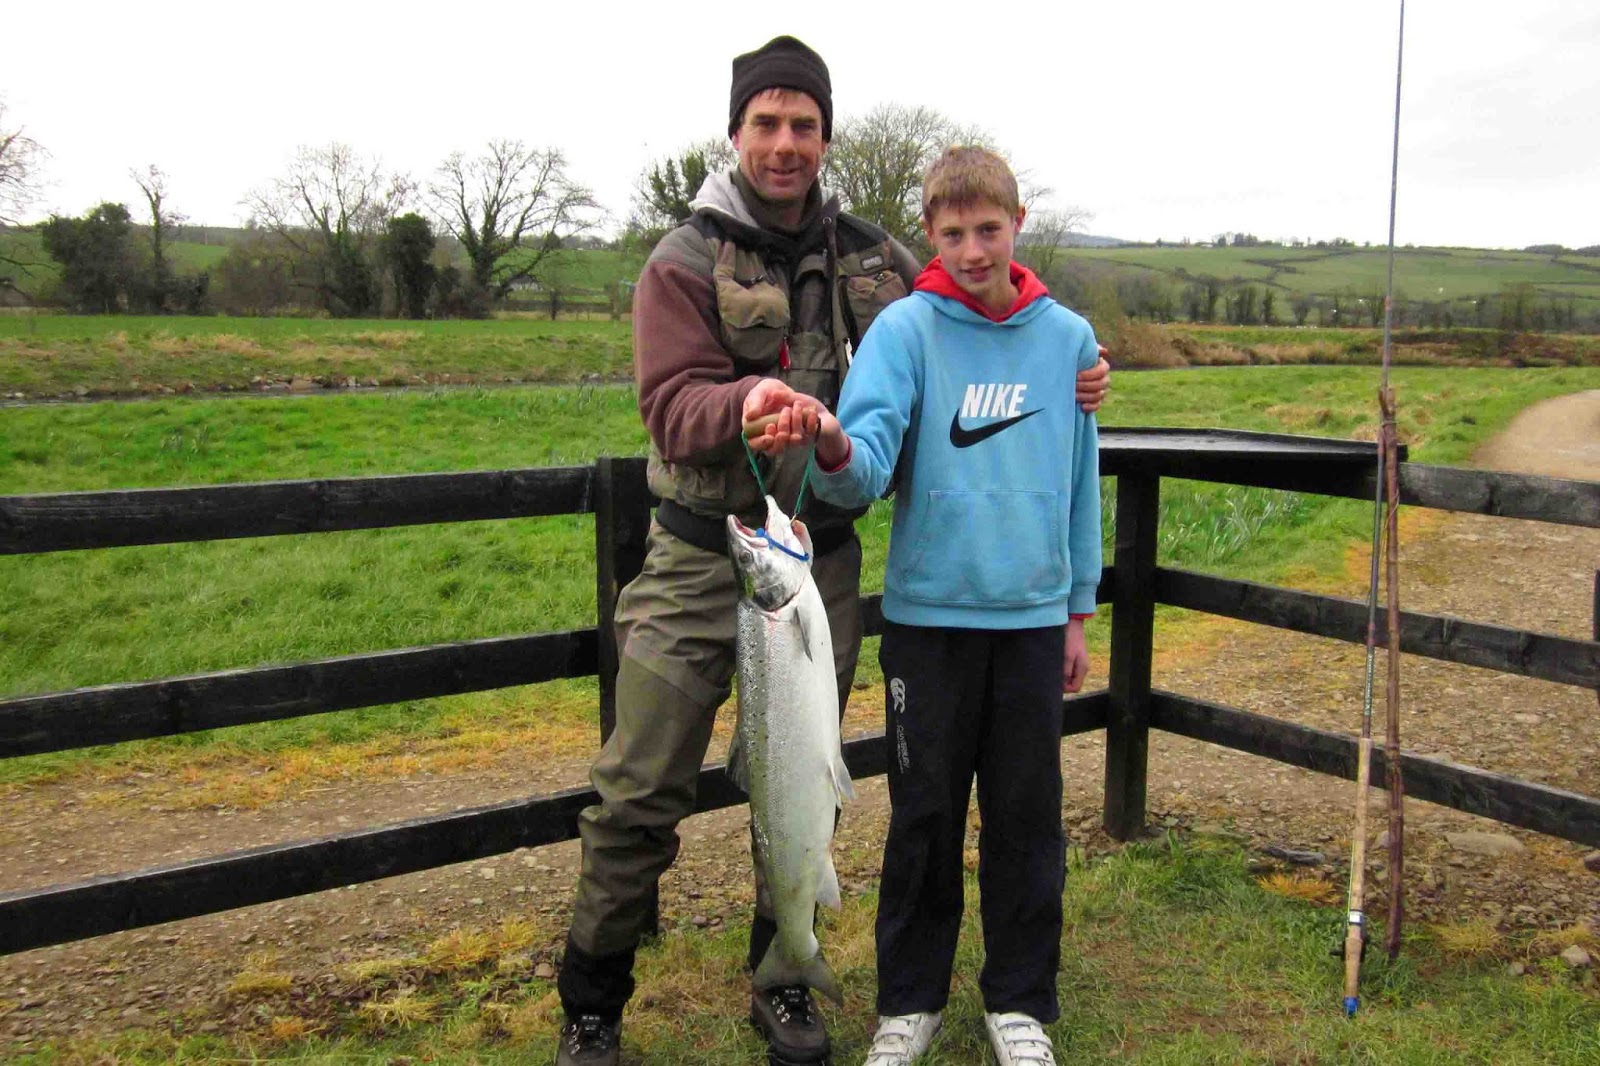 Fishing in Ireland